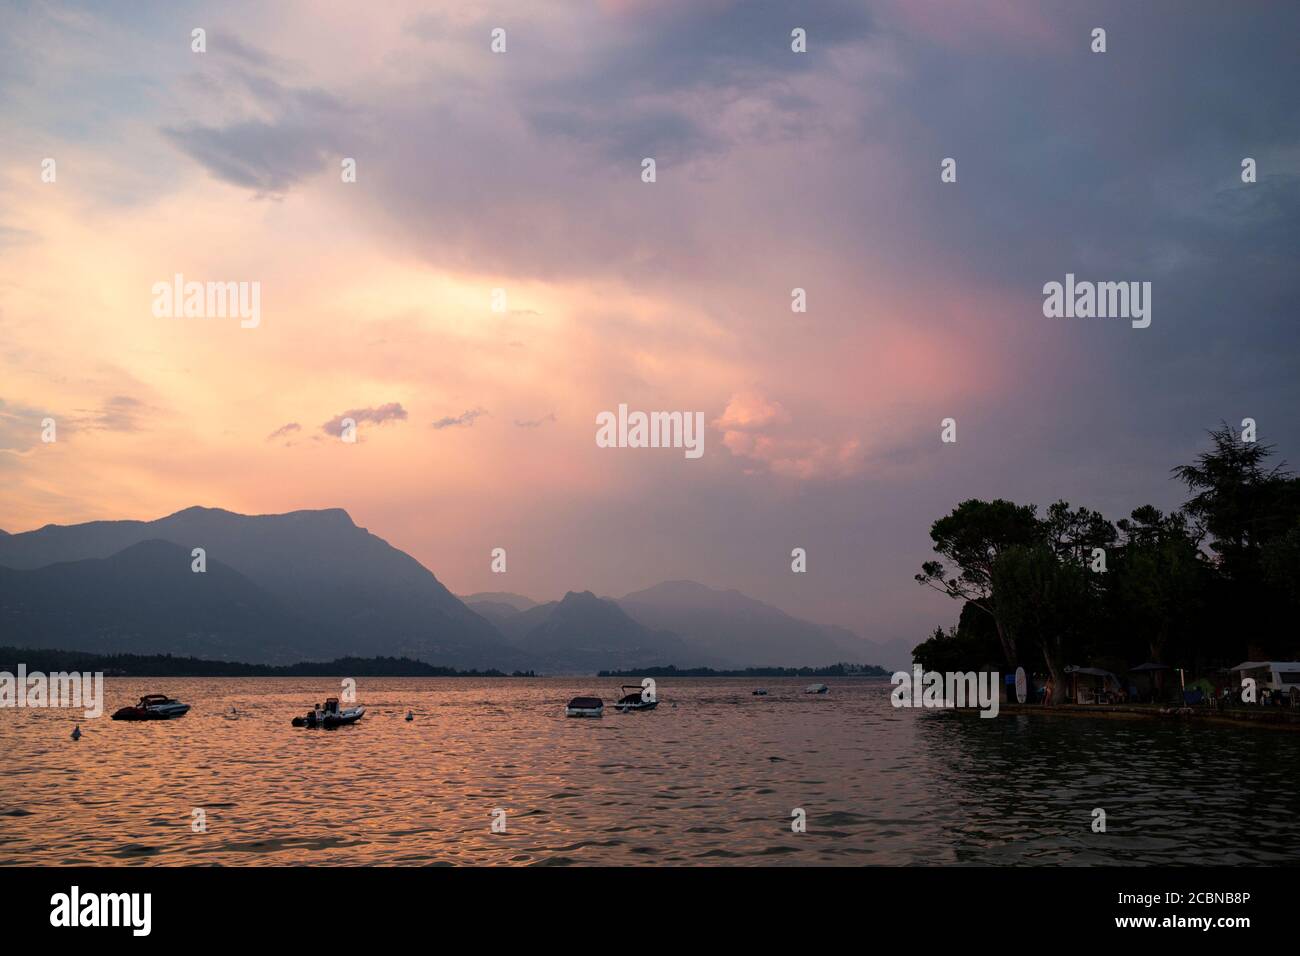 Magnifique coucher de soleil violet avec brume rose sur le lac de Garde avec des bateaux fixes. Manerba del Garda, Lombardie, Italie. Banque D'Images